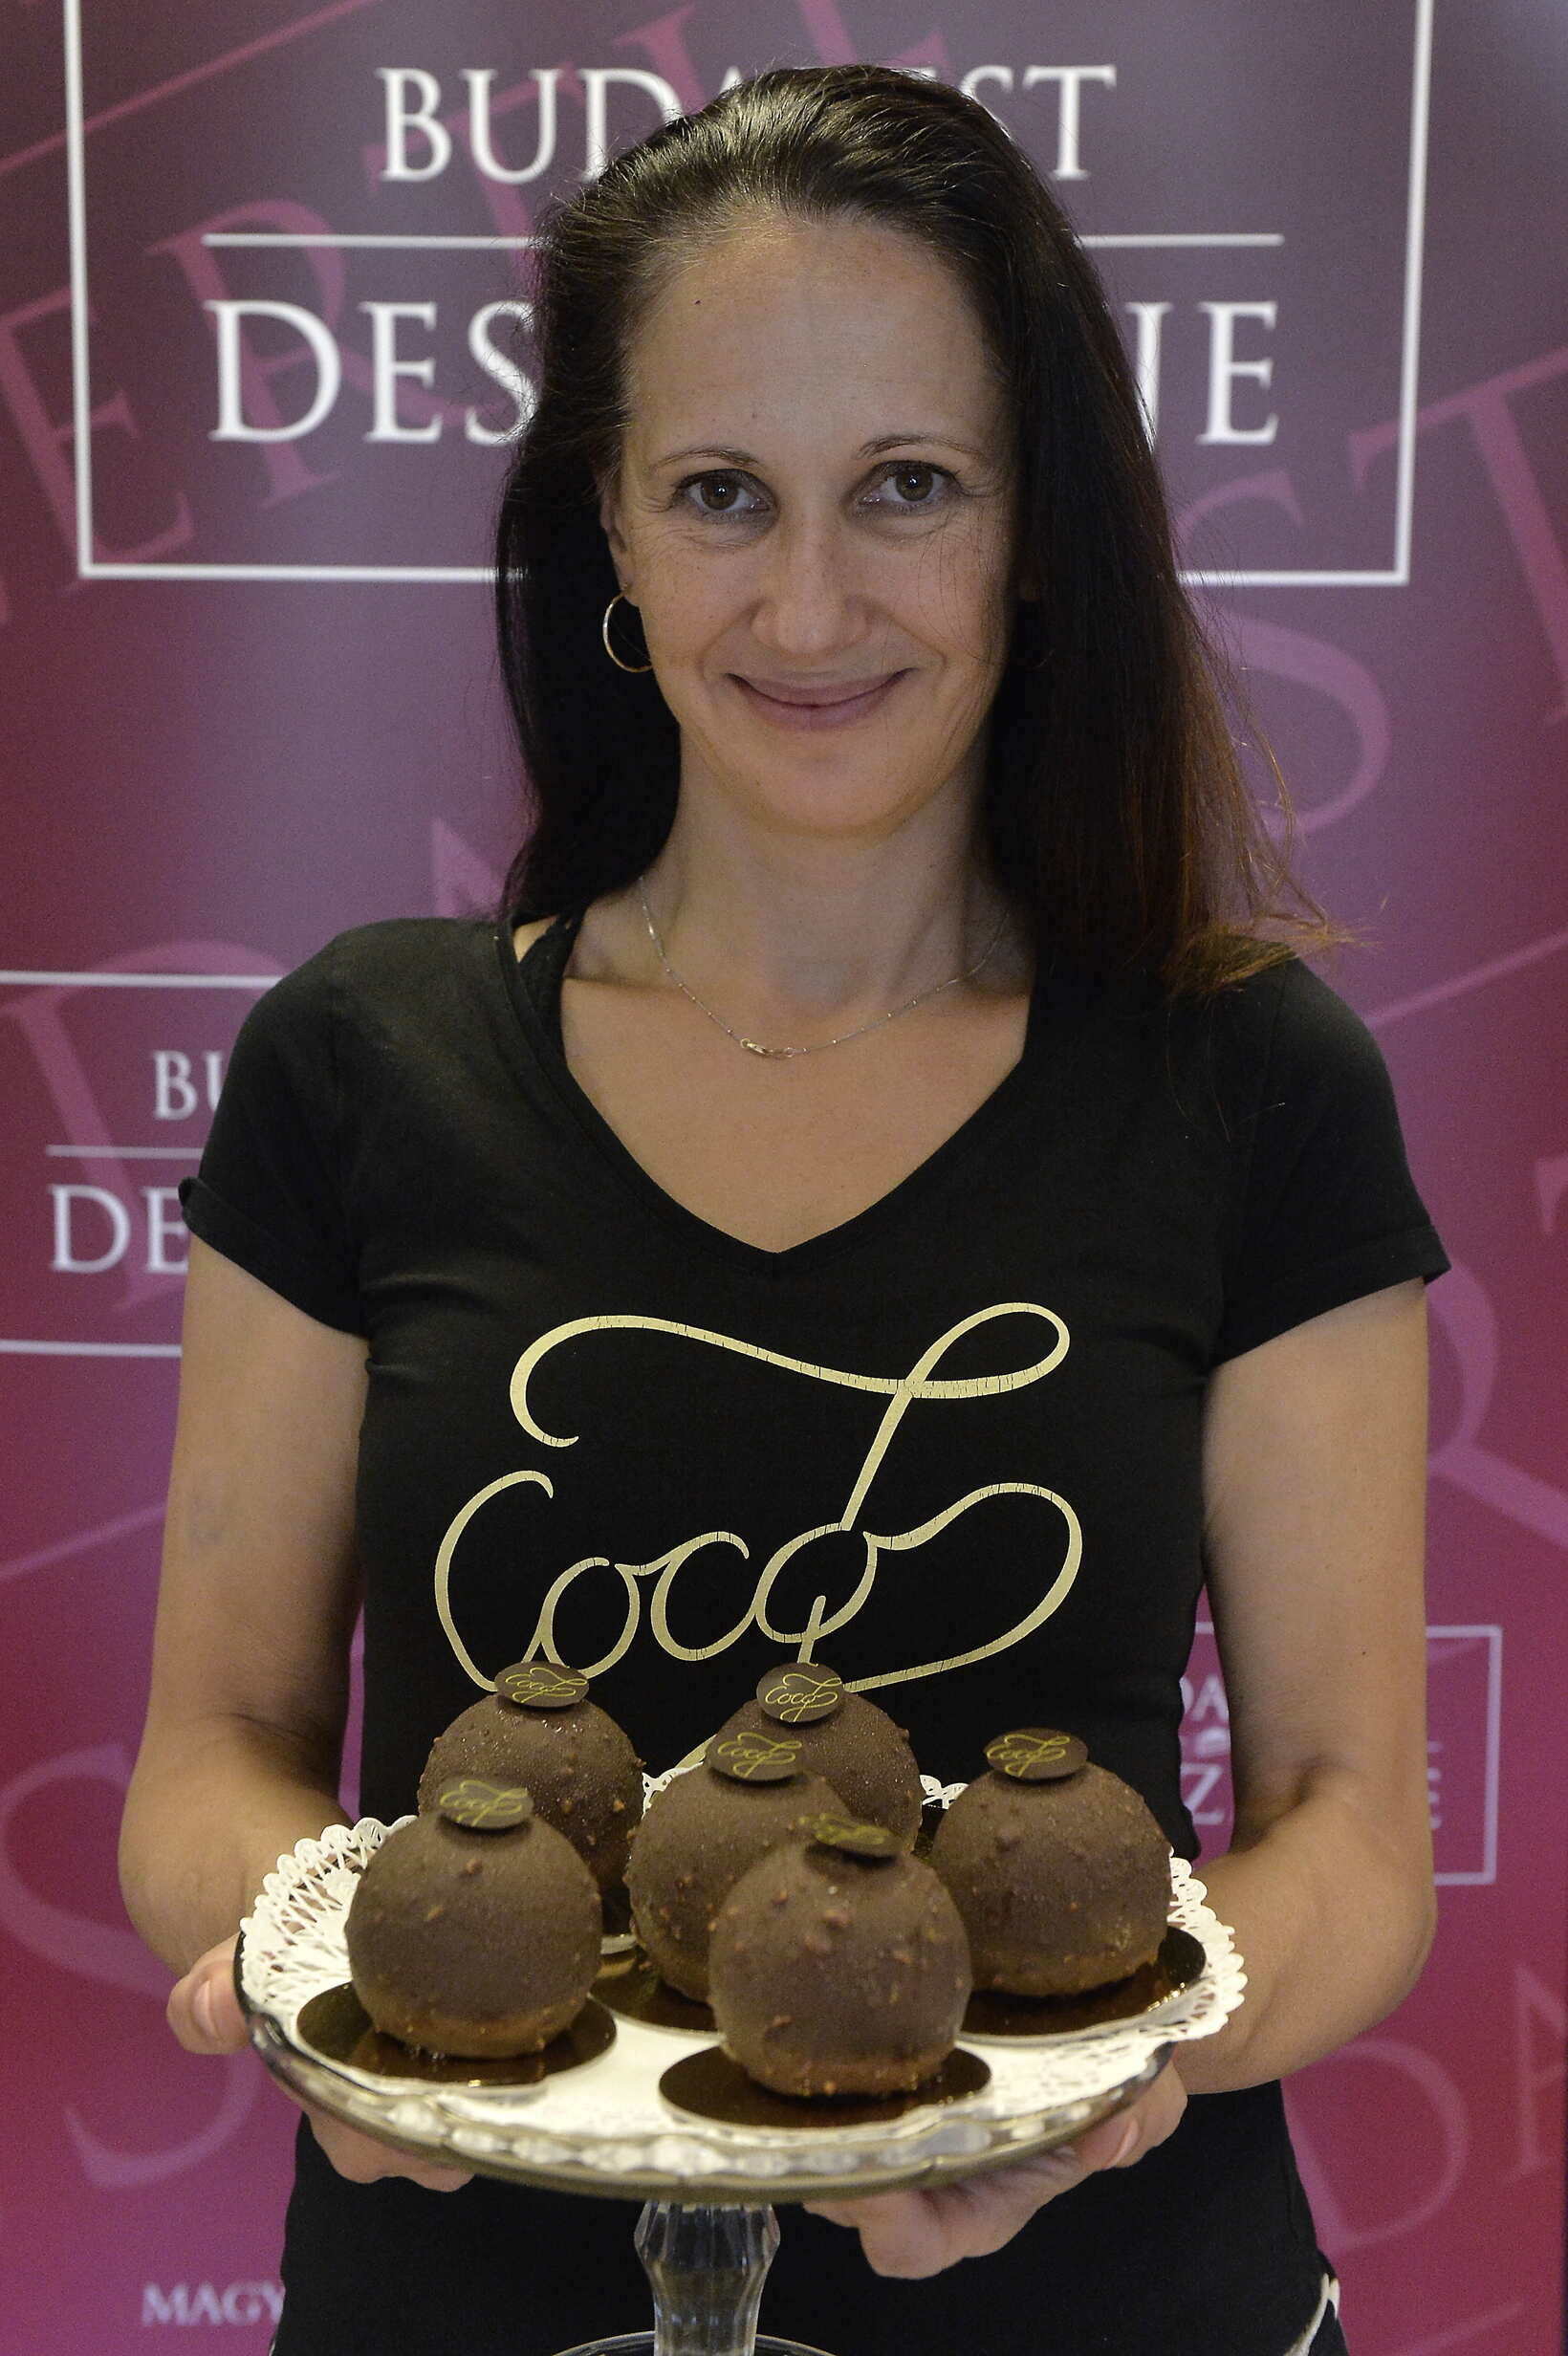 Dessert-von-Budapest-Coco7-Chocolate-Shop-Kuchen-Essen